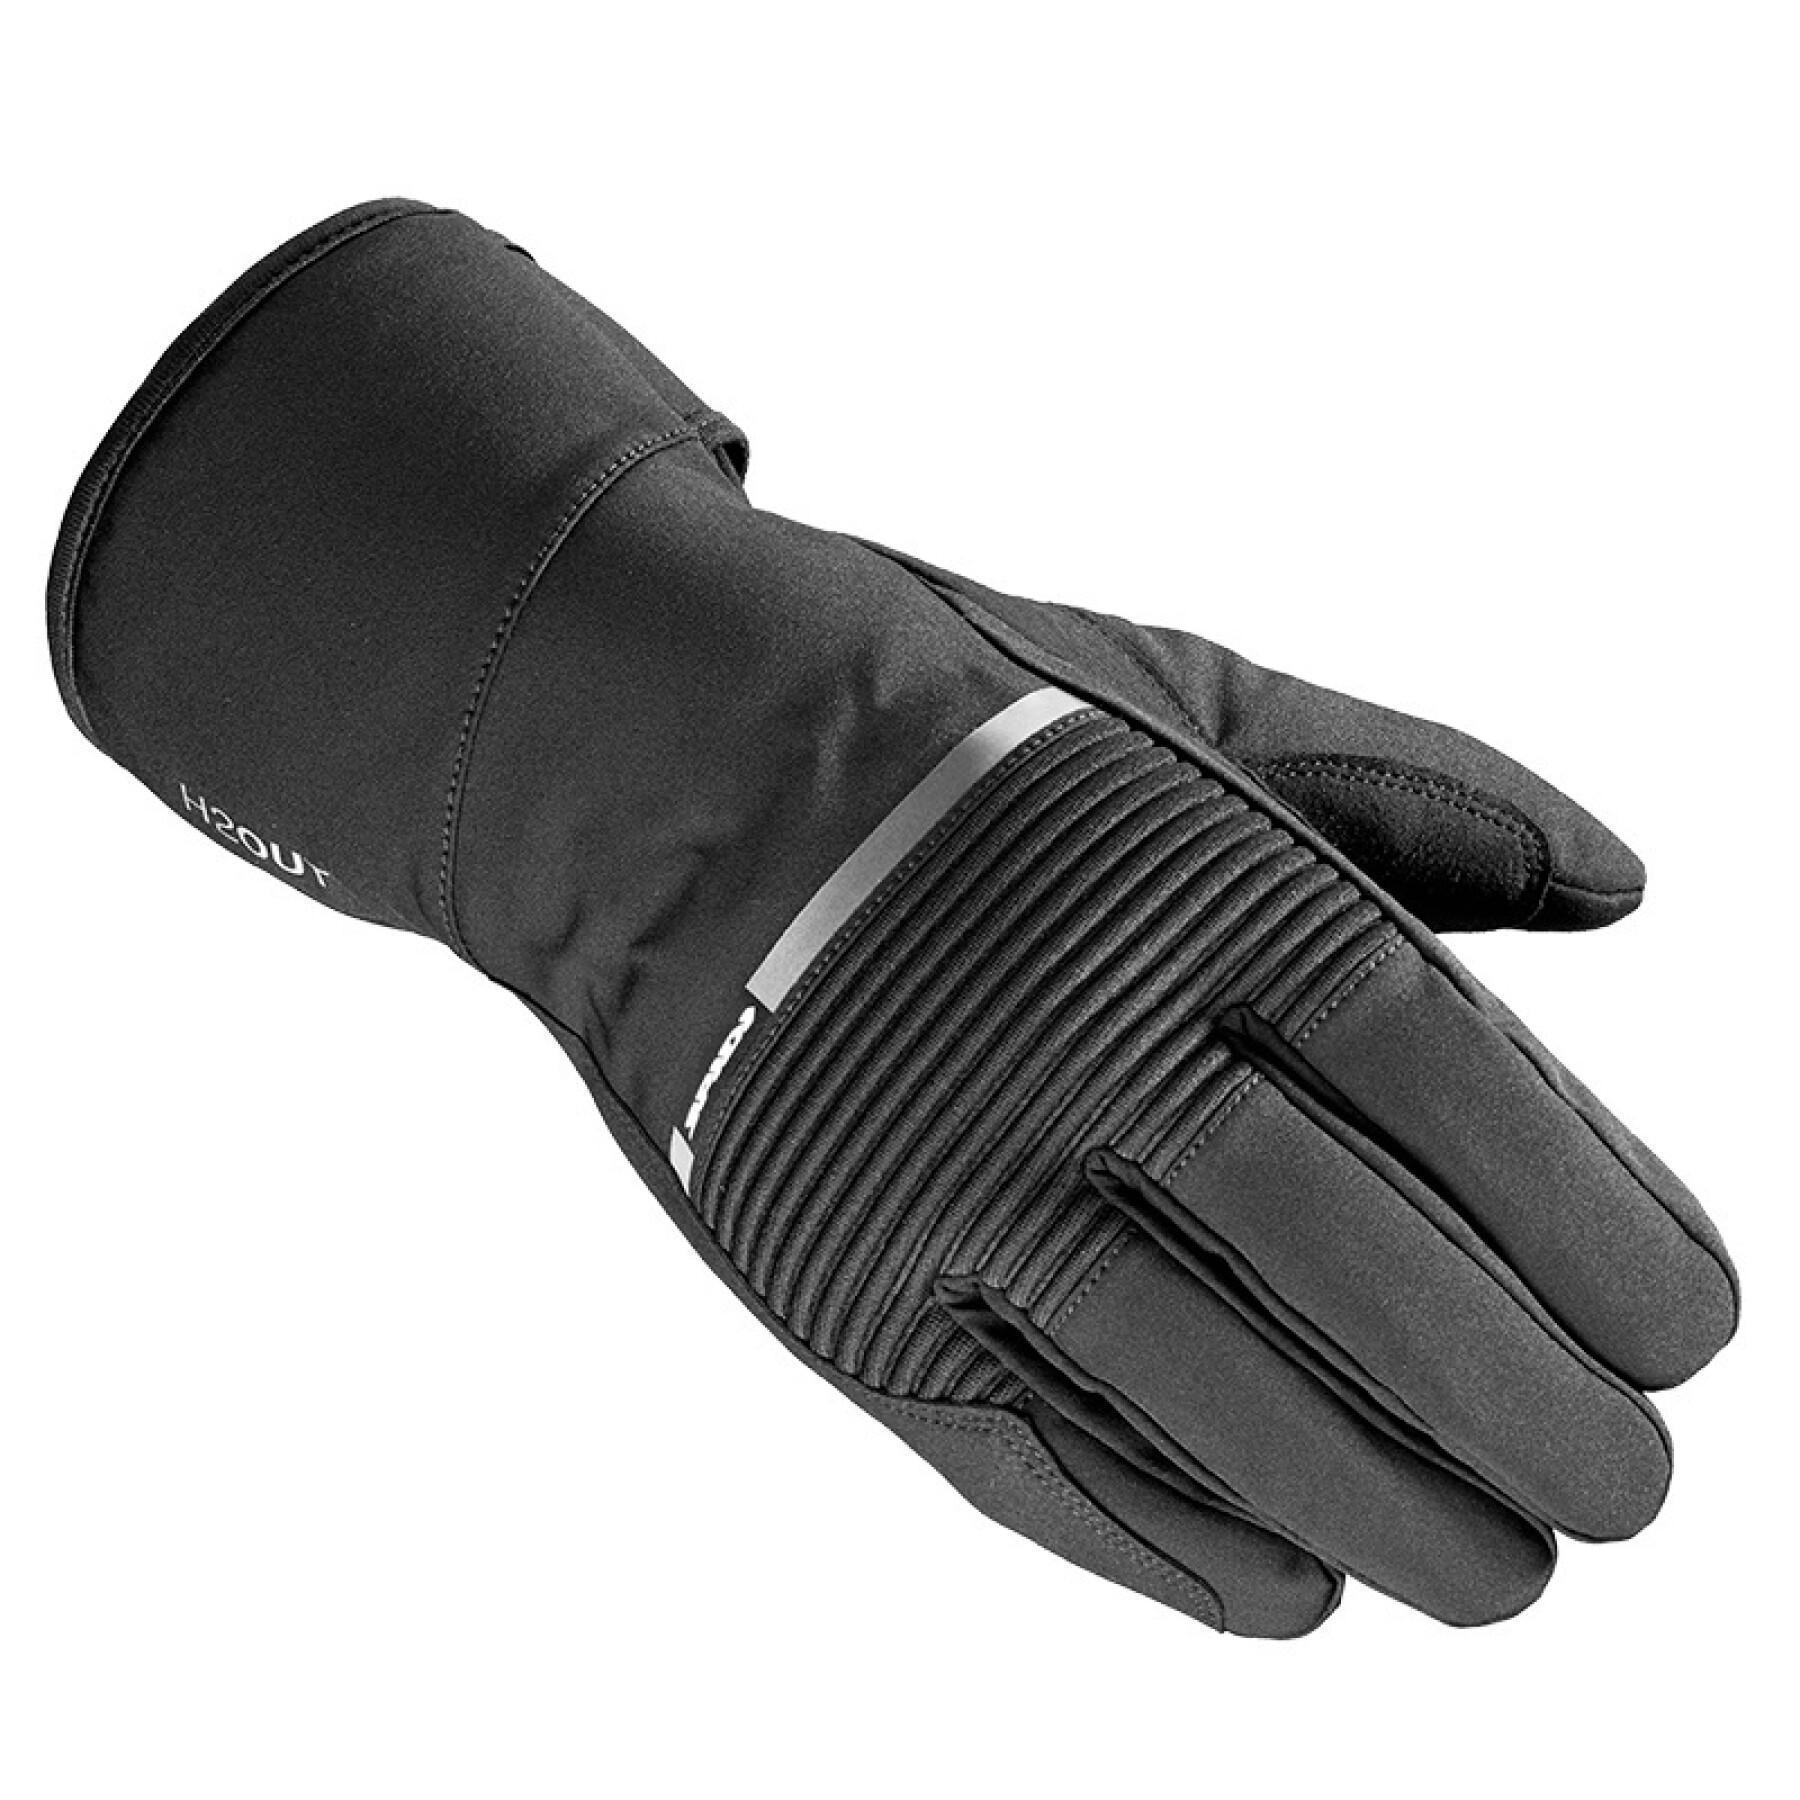 Winter motorcycle gloves Spidi underground k3